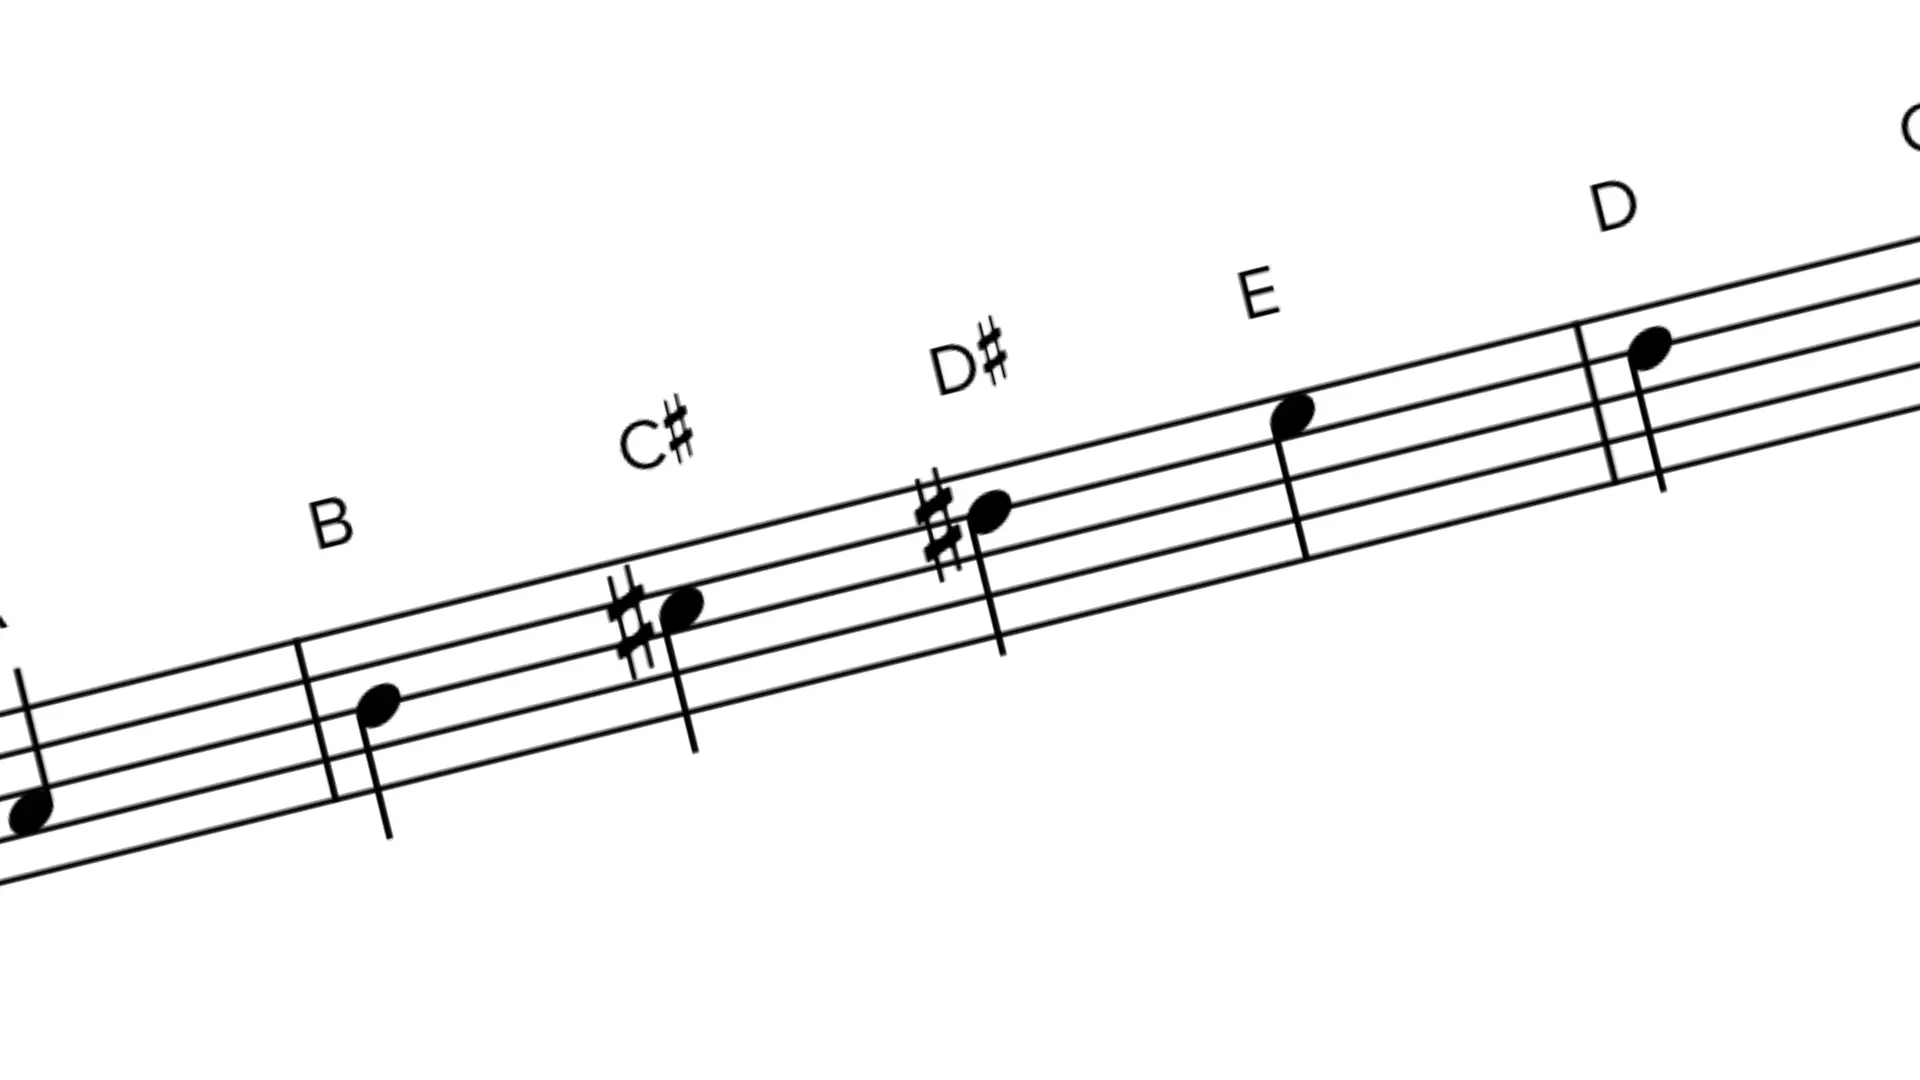 escala de re menor violin - Cuáles son las escalas menores en el violín